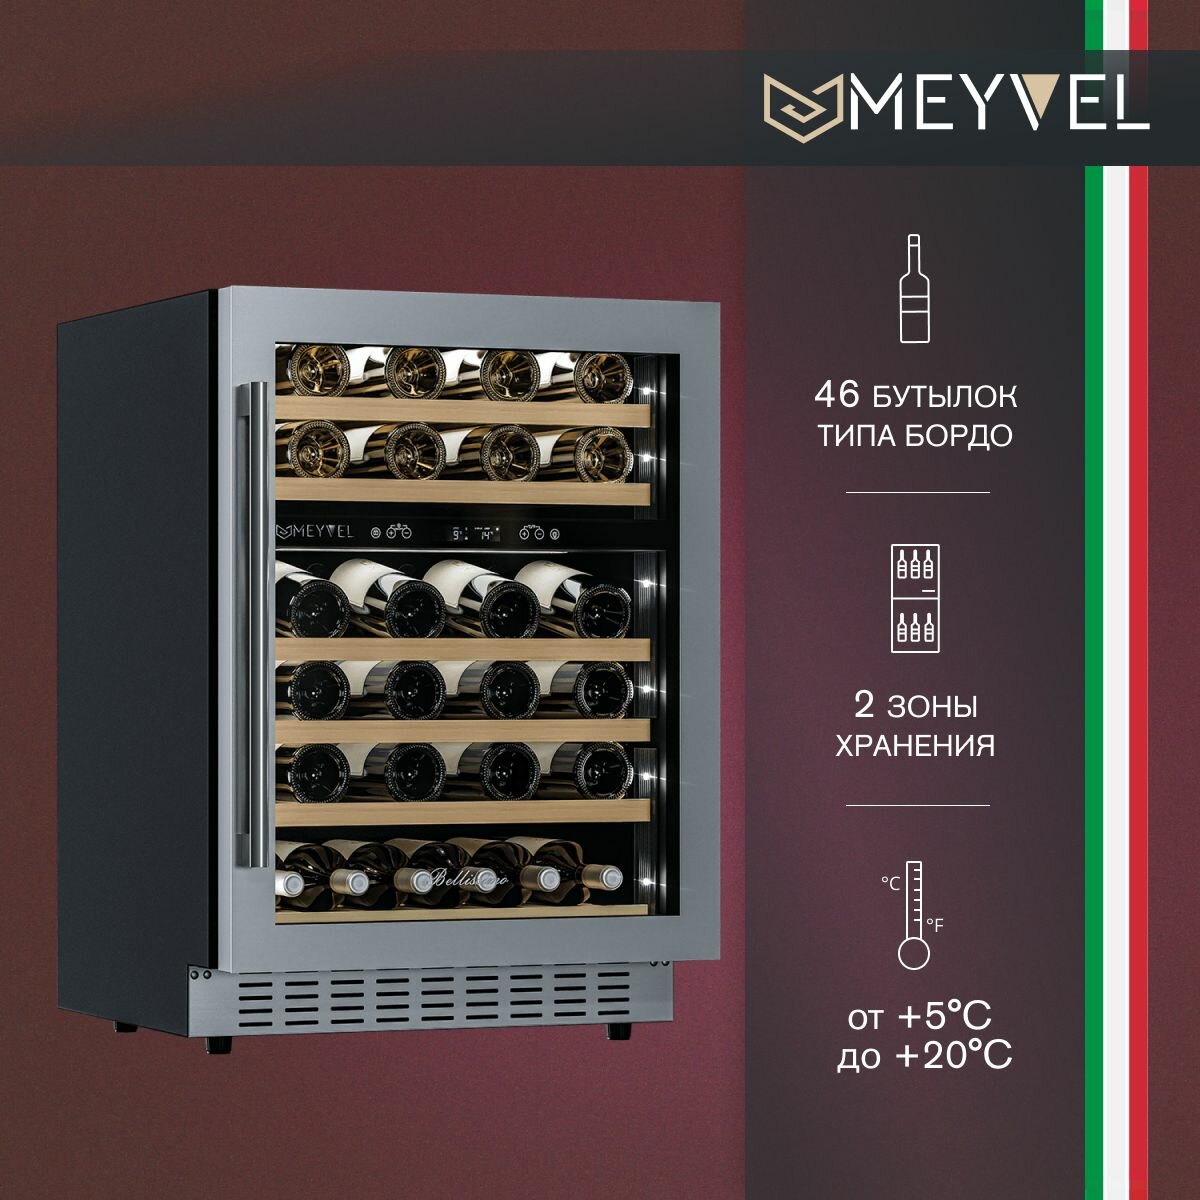 Винный холодильный шкаф Meyvel MV46PRO-KST2 компрессорный (встраиваемый / отдельностоящий холодильник для вина на 46 бутылок)